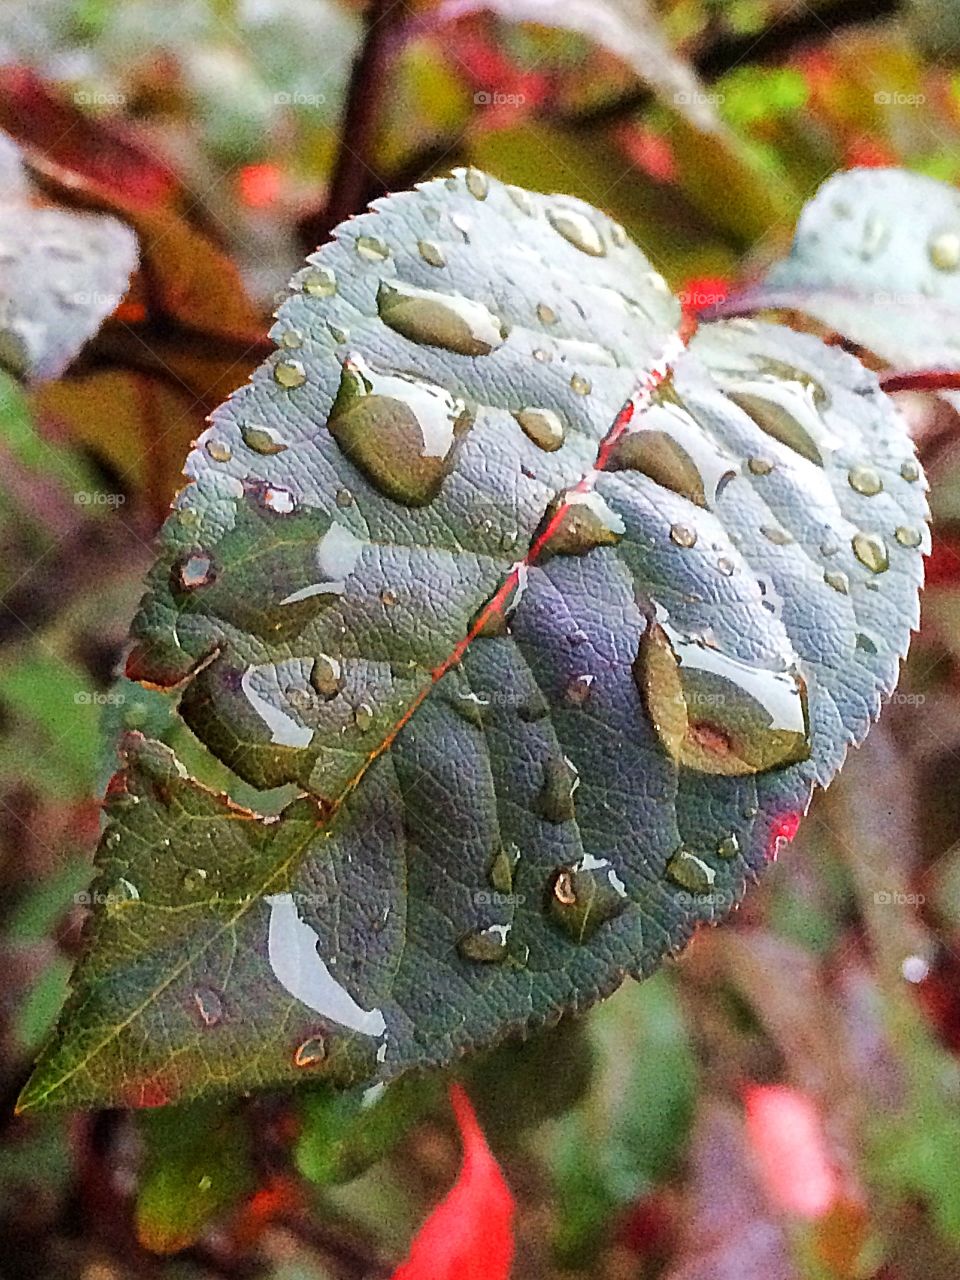 Rain drops, leaf